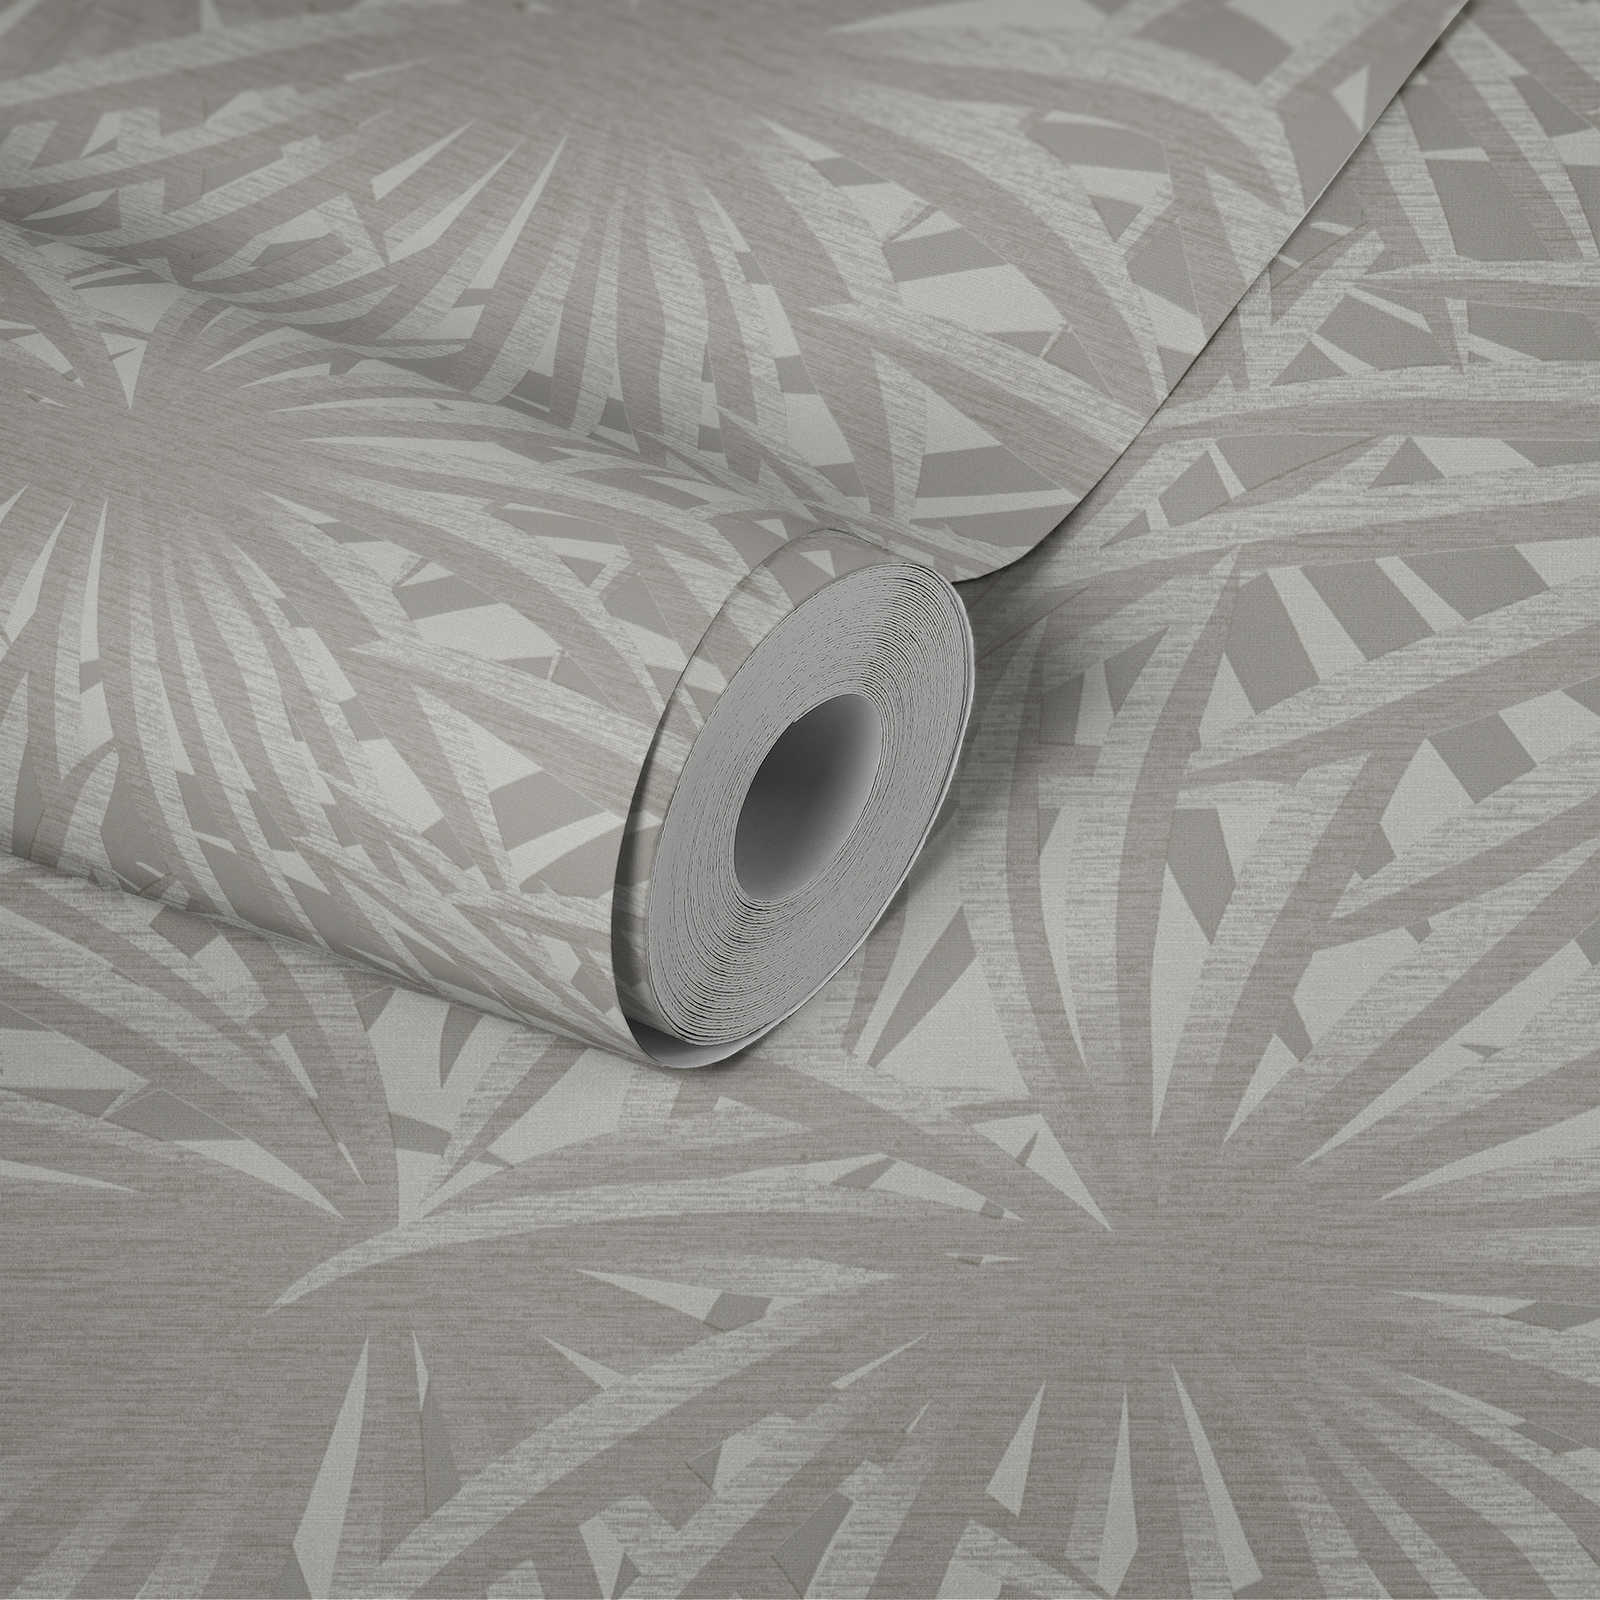             Papel pintado no tejido con diseño de hoja con brillo metálico - gris, metálico, blanco
        